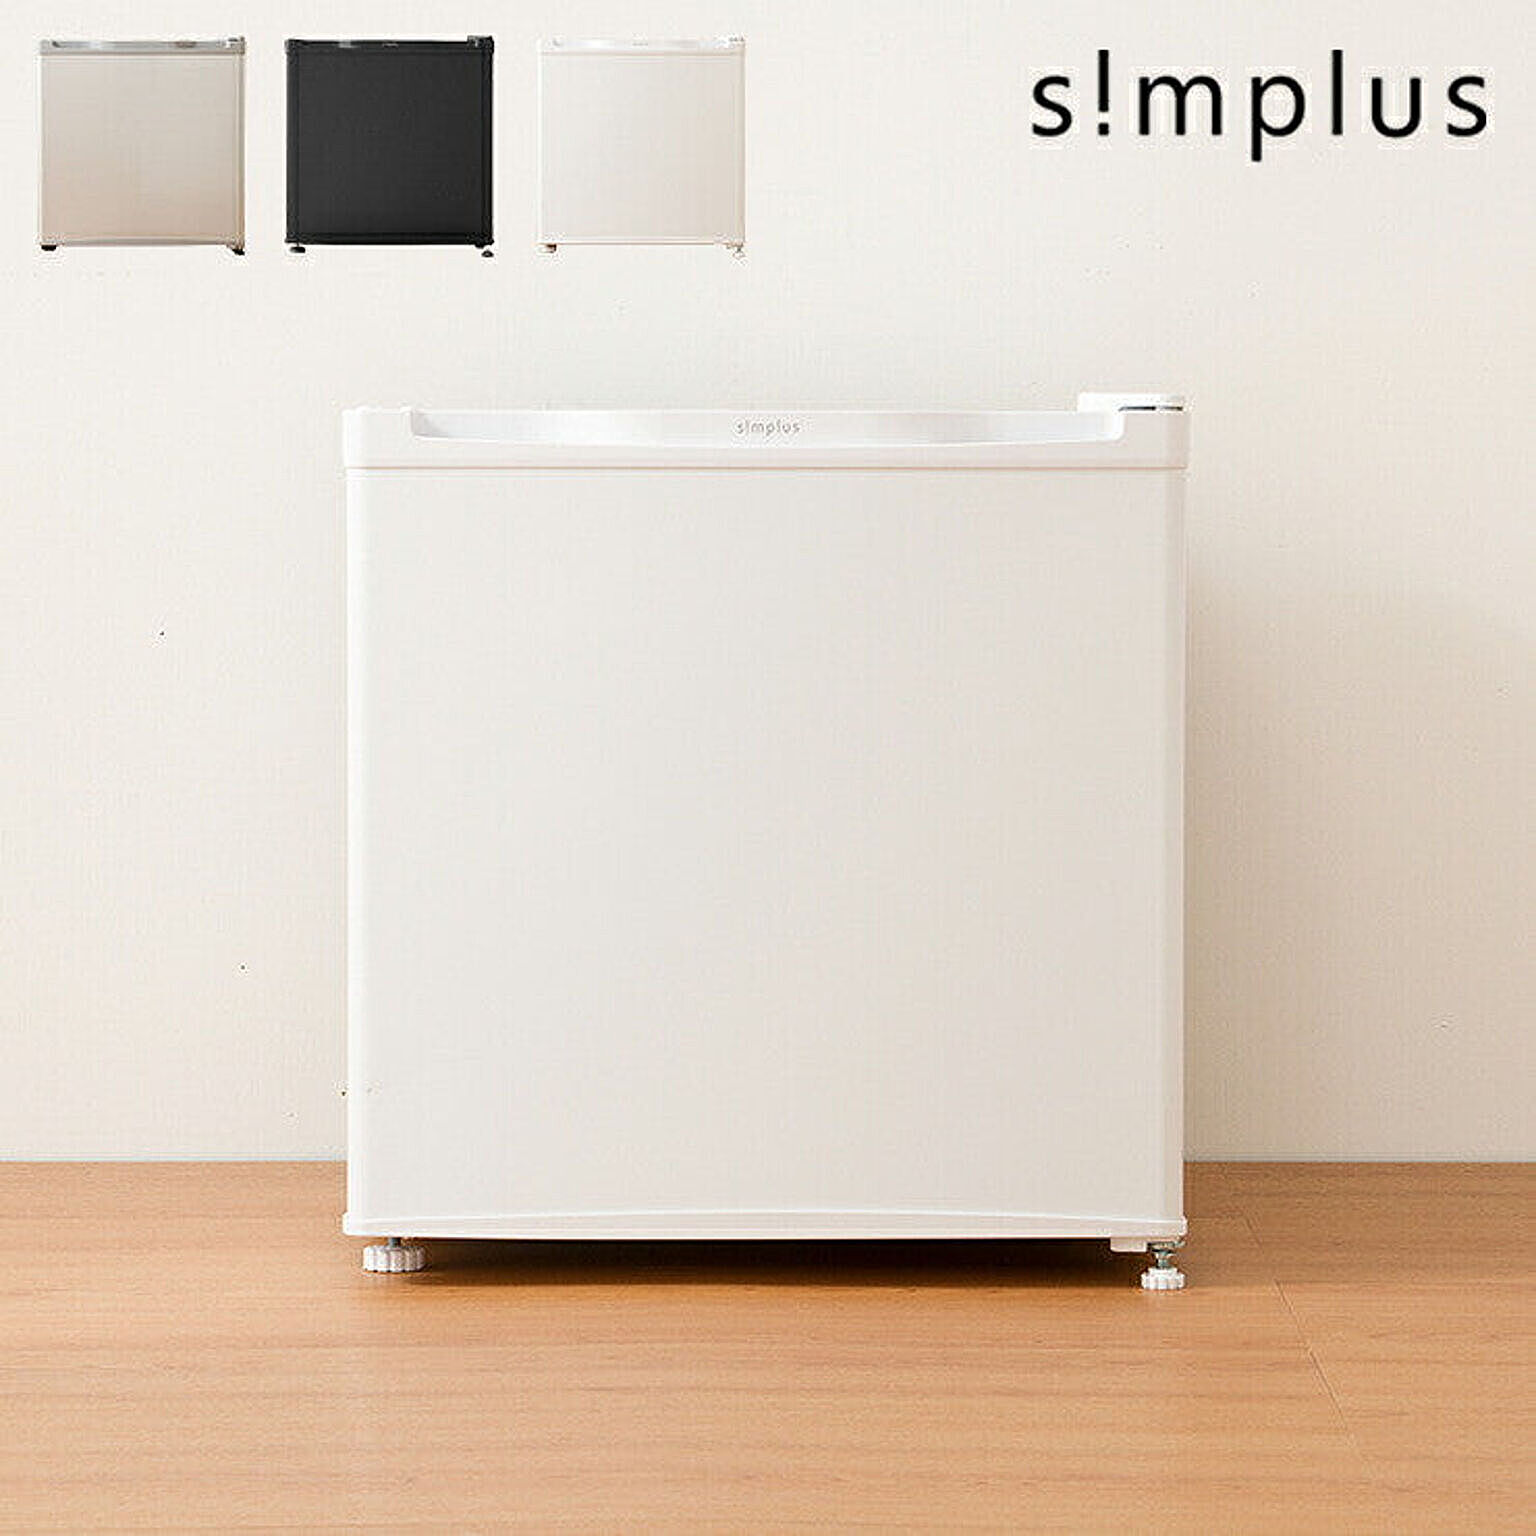 simplus 冷凍庫 1ドア冷凍庫 31L 1ドア 直冷式 小型 コンパクト スリム 両開き 冷凍 耐熱 一人暮らし 新生活 ミニ冷凍庫 小型冷凍庫 フリーザー